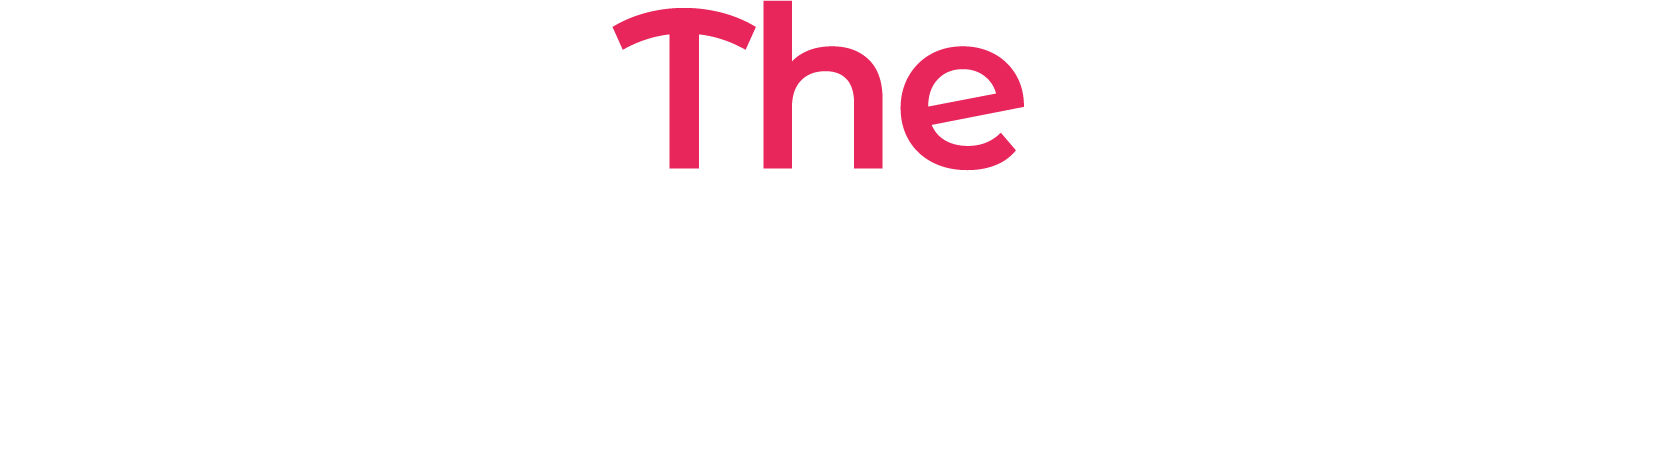 the mantis logo